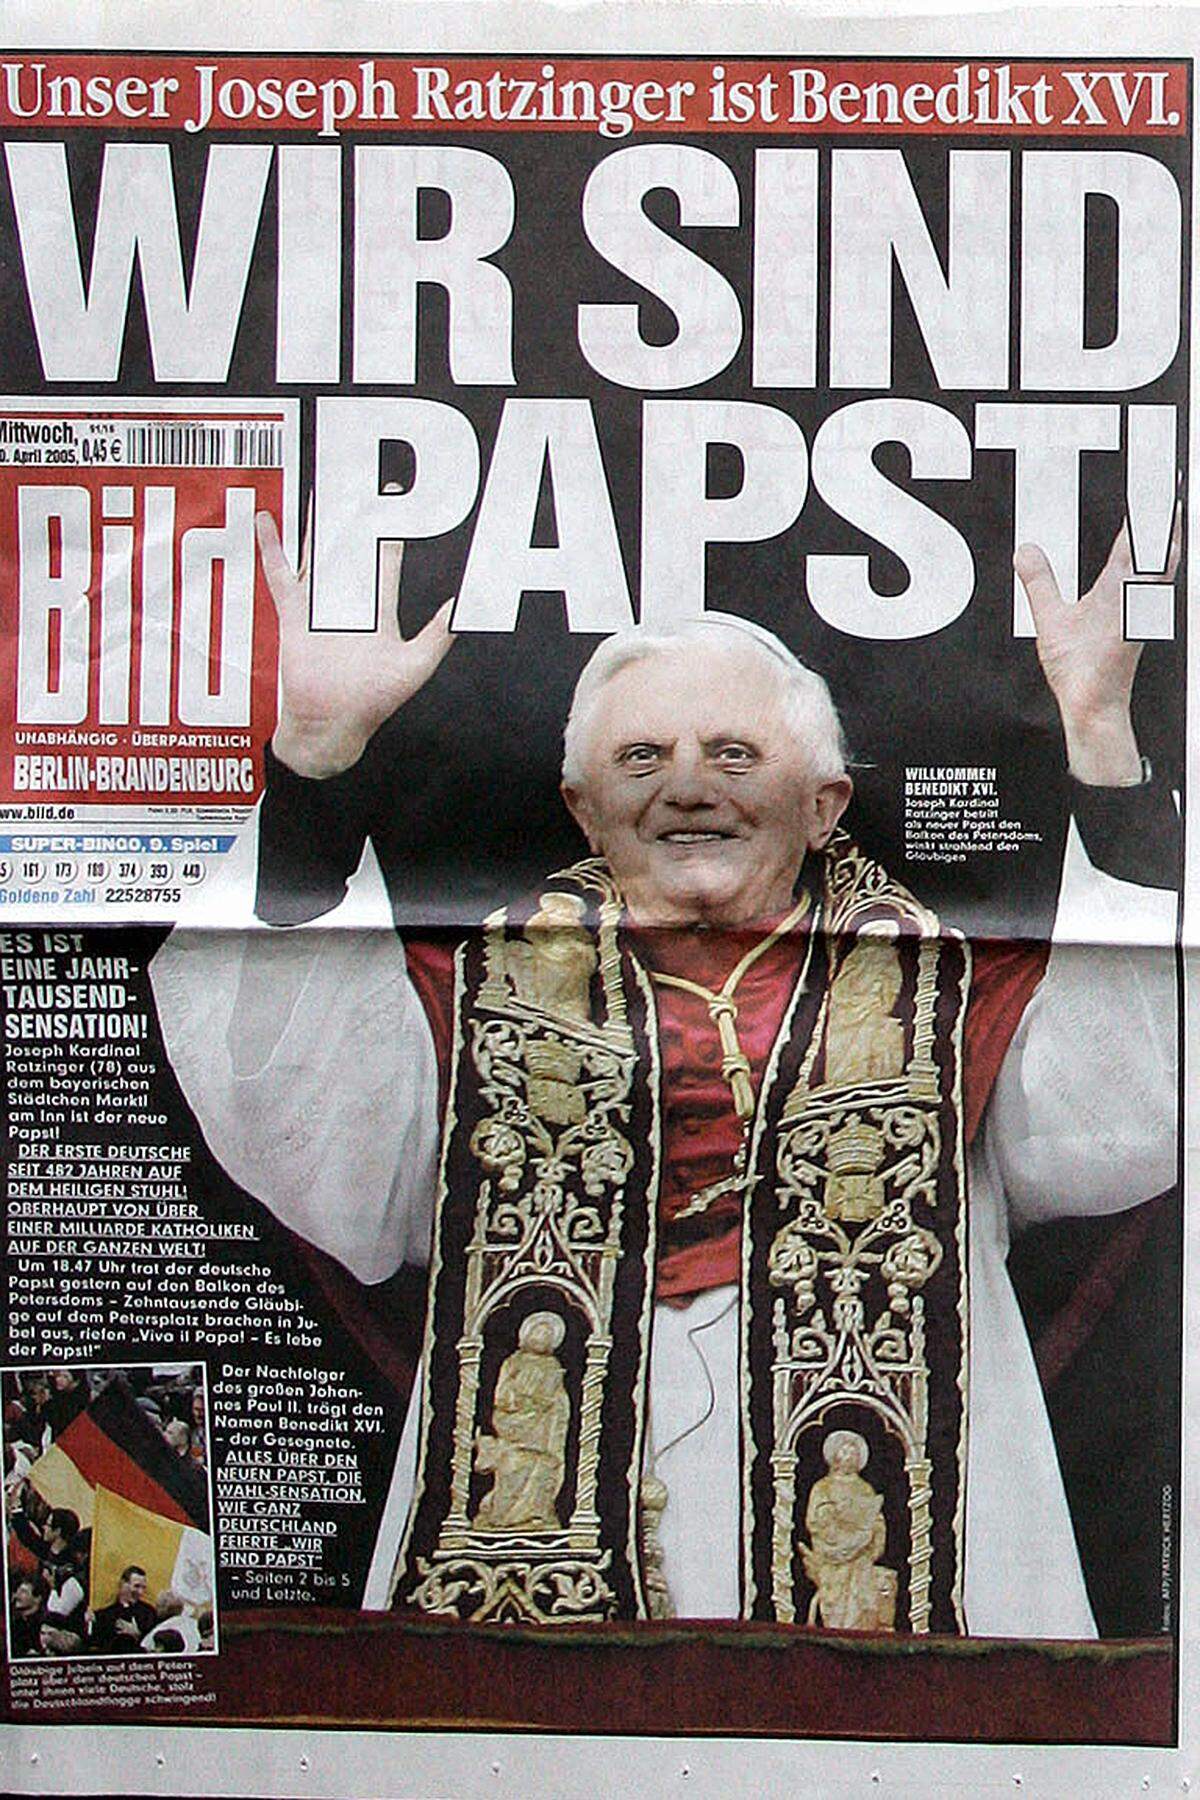 Kurze, knackige Titel, nicht selten mit dem Anspruch zum Größenwahn verbunden, sind die Maxime der "Bild". Die wohl berühmteste Schlagzeile kreierte man 2005, als Joseph Ratzinger zum neuen Papst Benedikt XVI. gewählt wurde: "Wir sind Papst!".